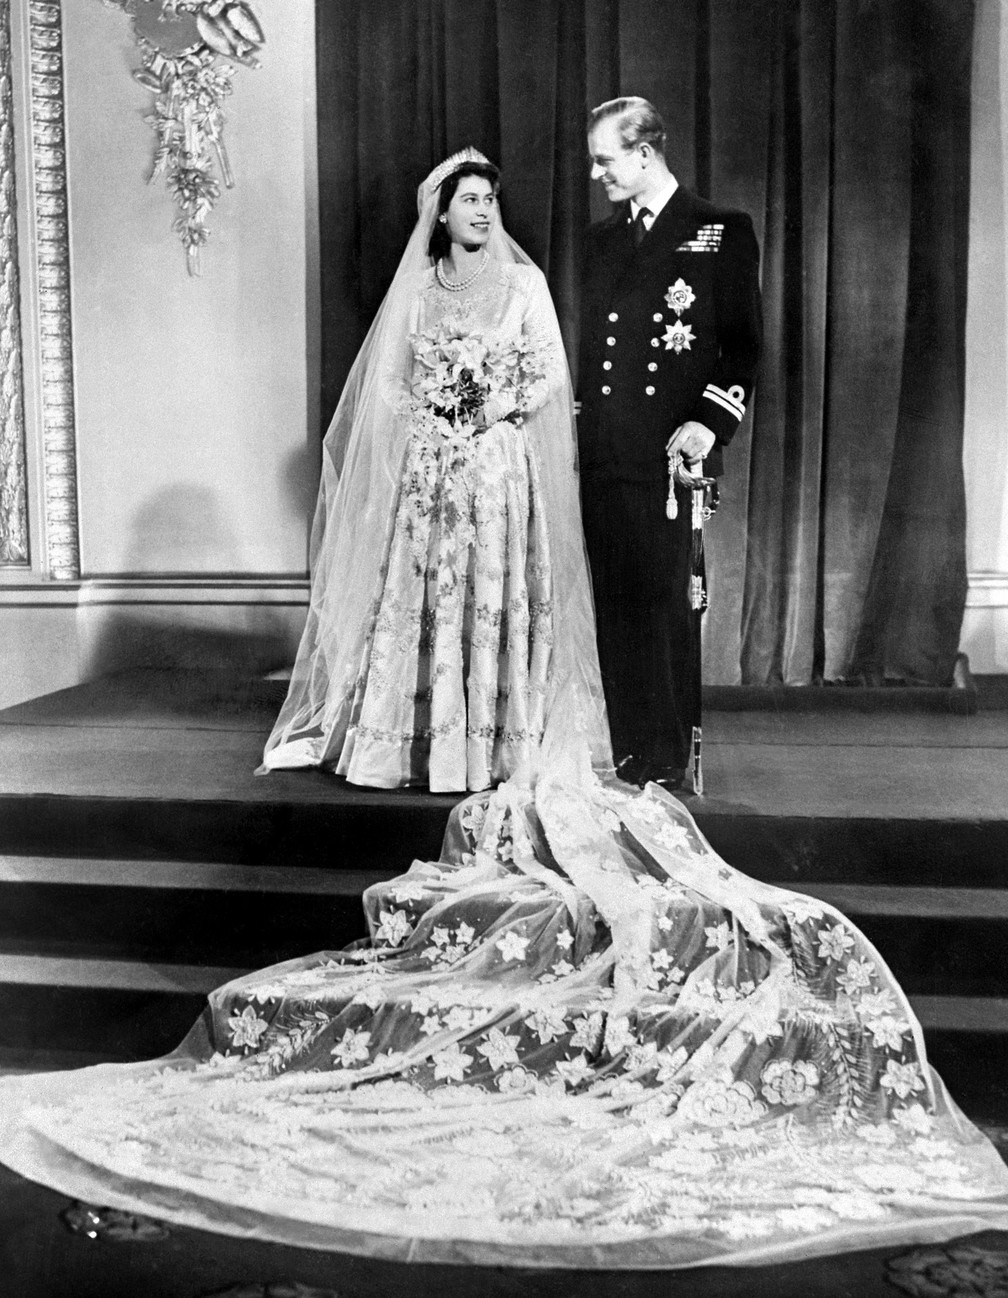 Nesta foto de arquivo tirada em 20 de novembro de 1947, a princesa britânica Elizabeth (futura rainha Elizabeth II) e Philip, duque de Edimburgo, posam no dia do casamento no Palácio de Buckingham, em Londres — Foto: AFP